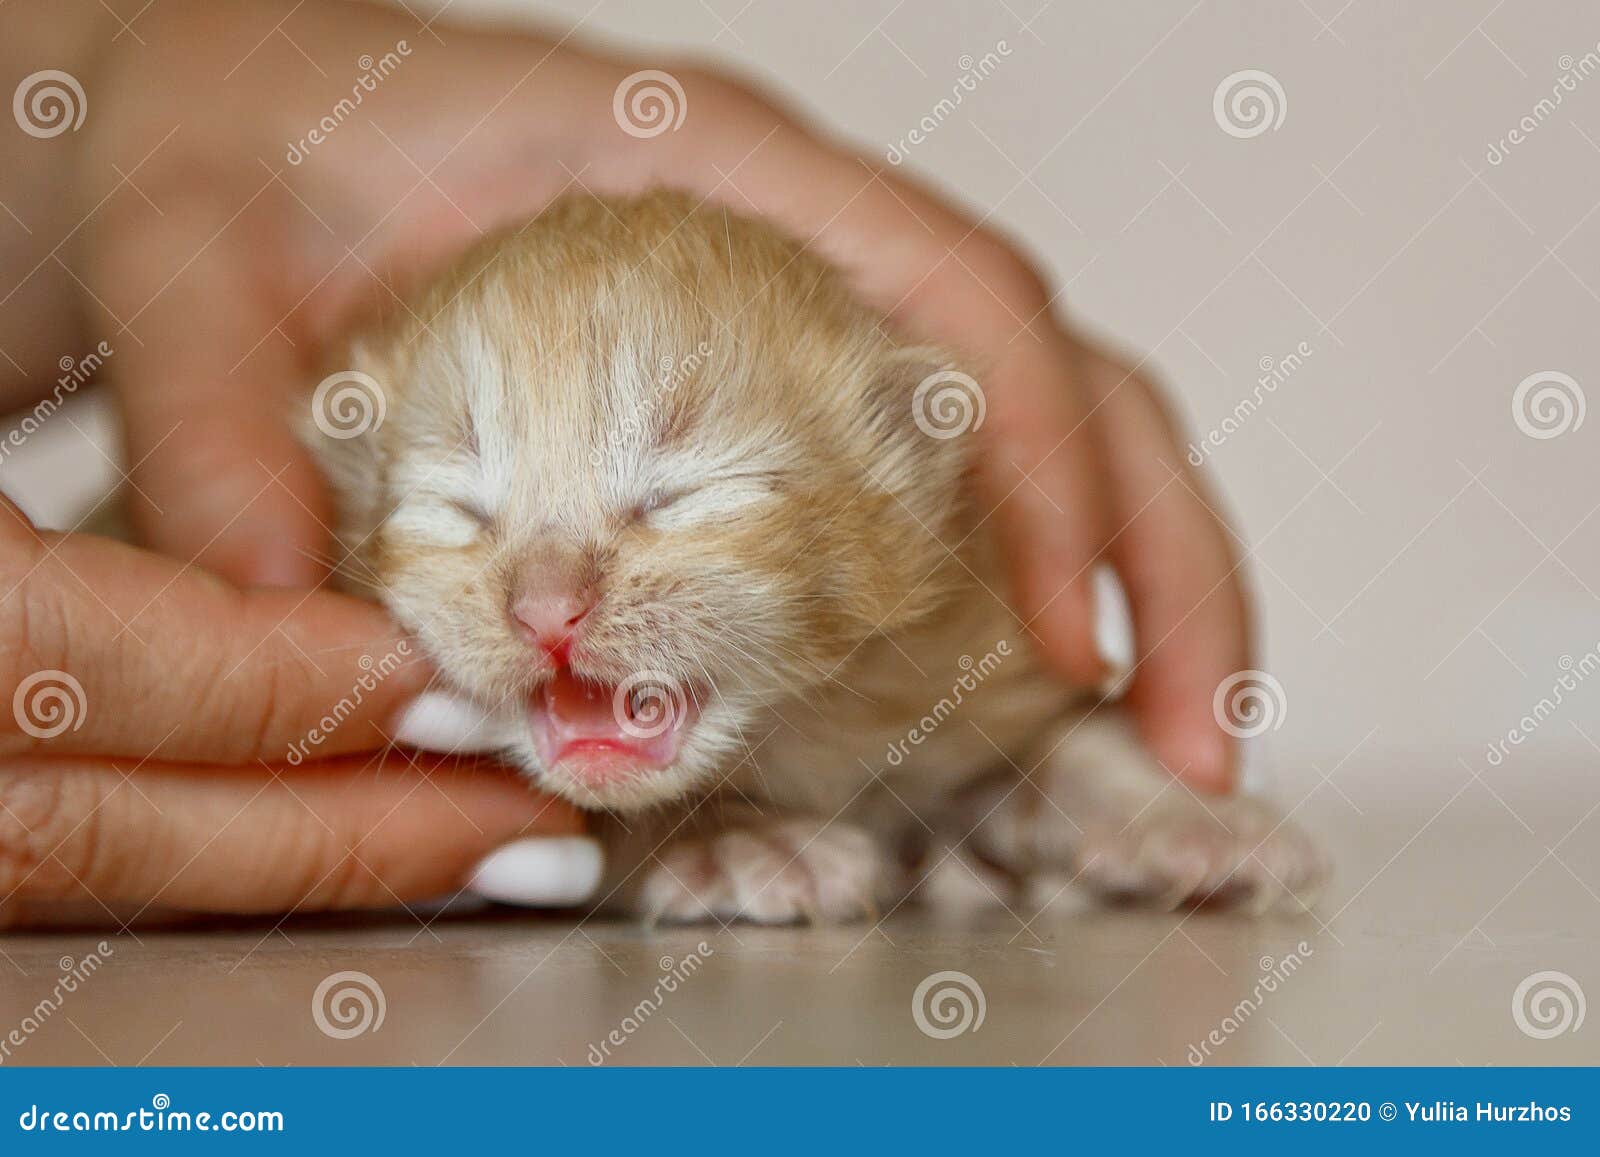 Beige, Small, Fluffy Cute Kitten in Hands Closeup. One Week Old ...